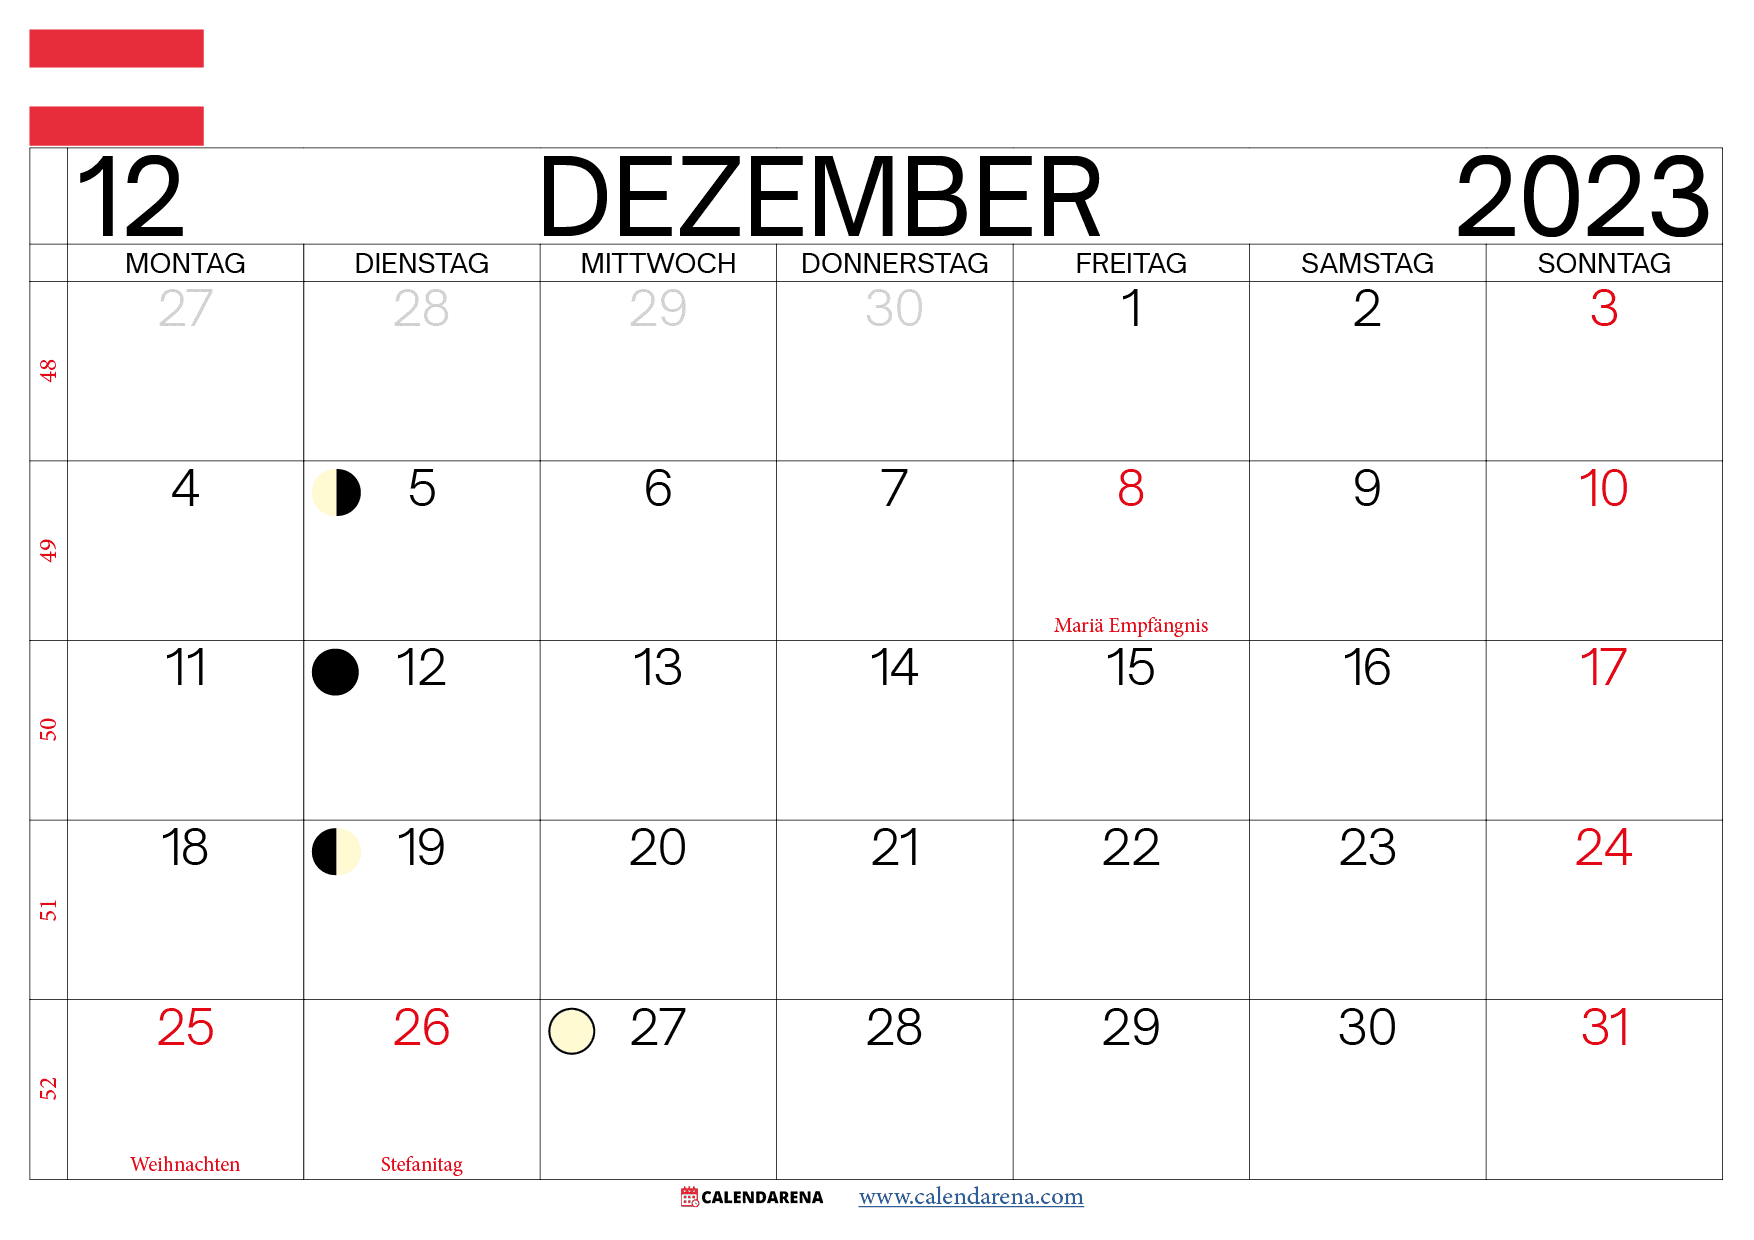 Dezember 2023 kalender österreich